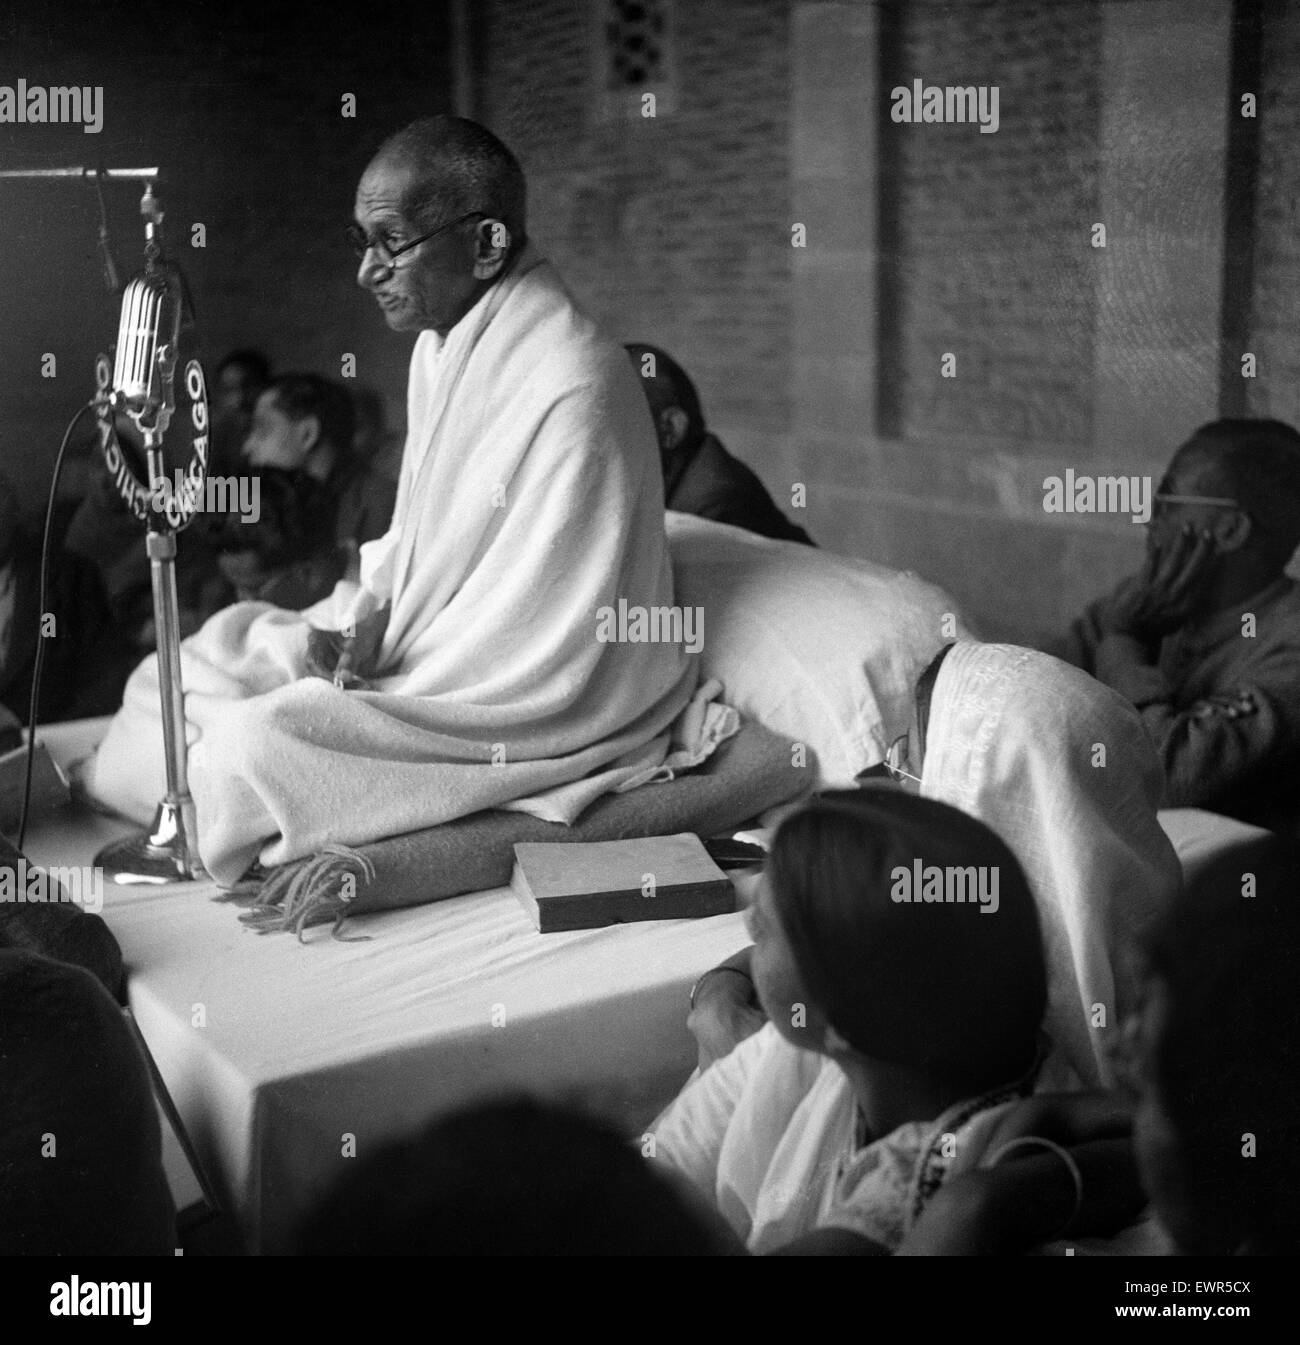 'Mahatma' Mohandas Gandhi, chef du mouvement pour l'indépendance de l'Inde britannique en Inde sous domination, photographié en Inde. Circa 1947. Banque D'Images